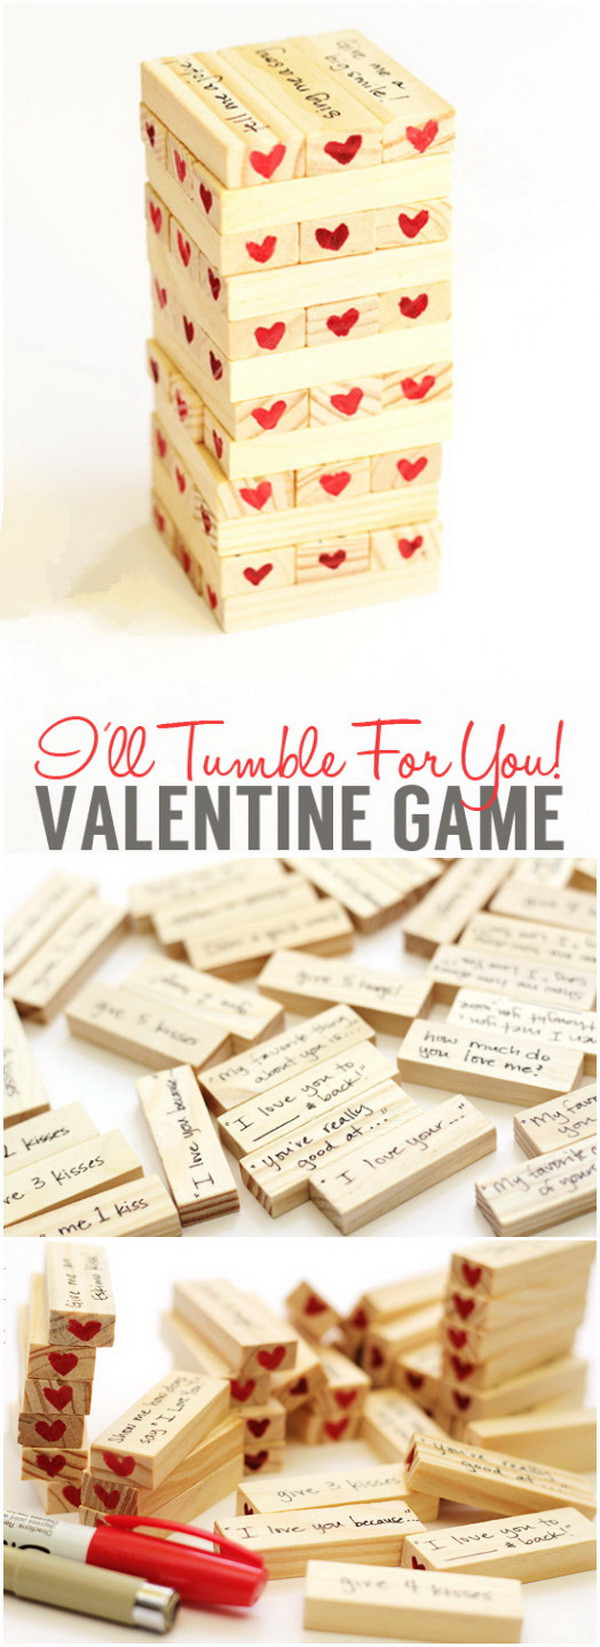 Valentines Boyfriend Gift Ideas
 Easy DIY Valentine s Day Gifts for Boyfriend Listing More